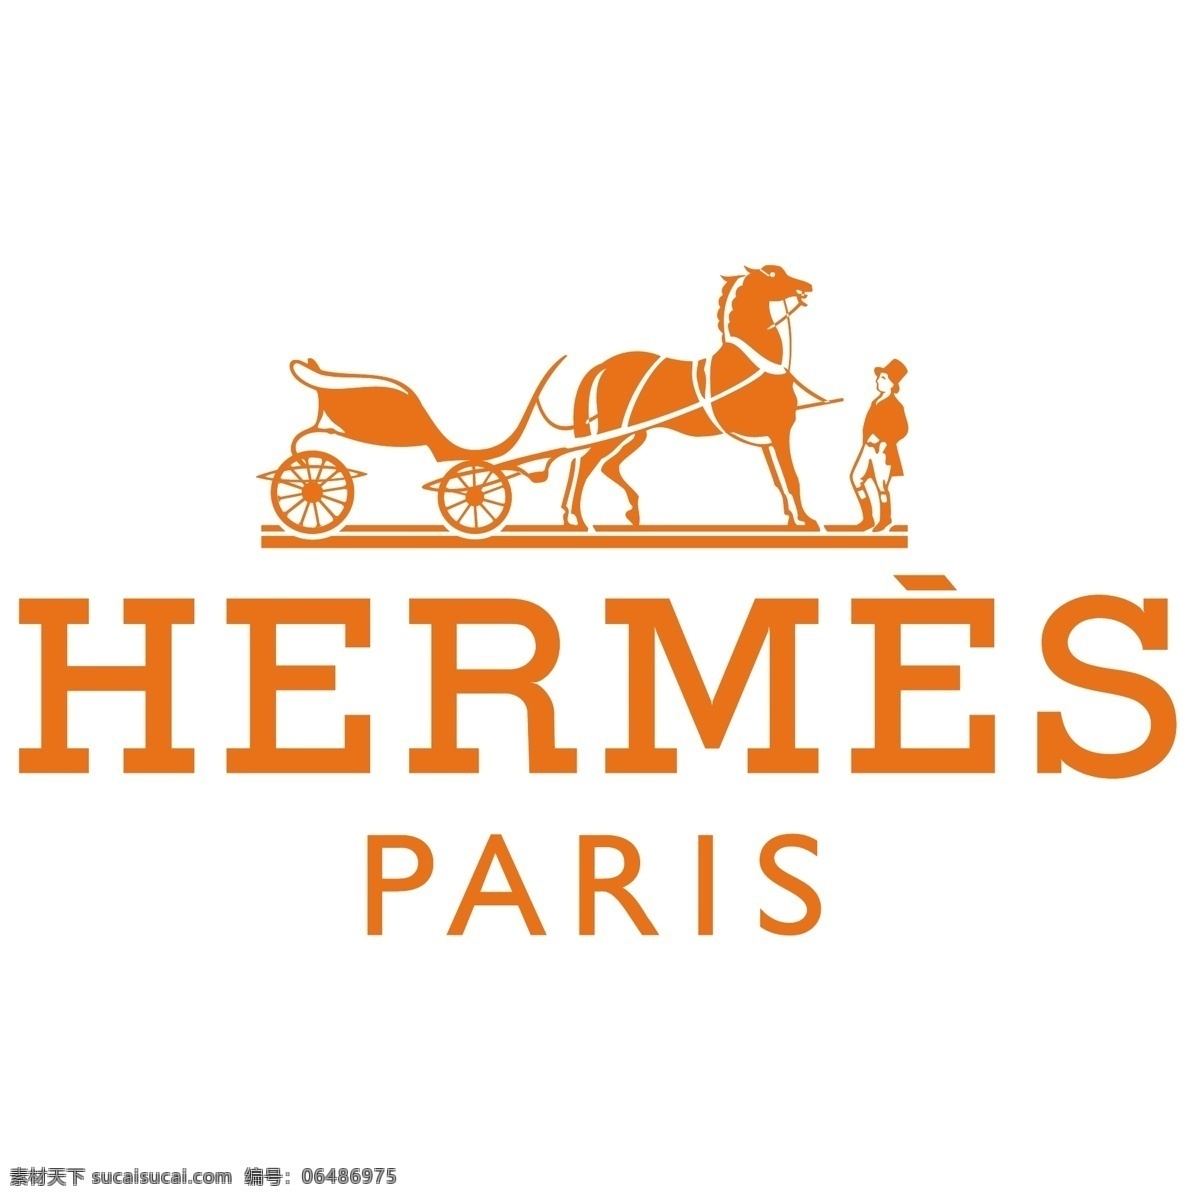 hermes logo 标识标志图标 企业logo 企业 标志 奢侈品 香水 爱马 仕 矢量 模板下载 爱马仕 高级服装 淘宝素材 其他淘宝素材